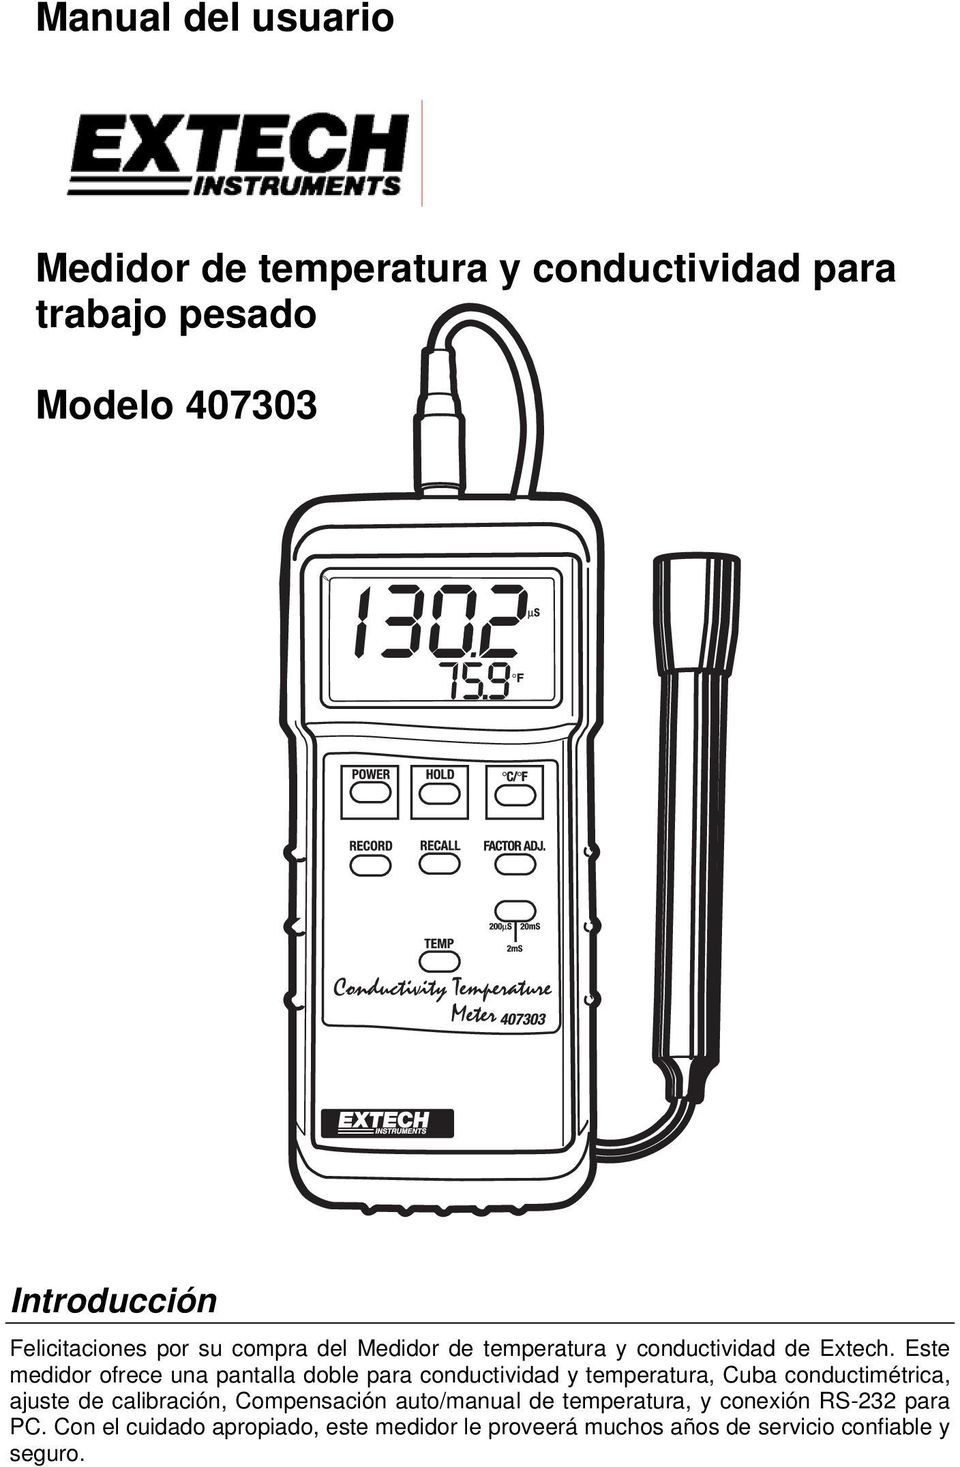 Este medidor ofrece una pantalla doble para conductividad y temperatura, Cuba conductimétrica, ajuste de